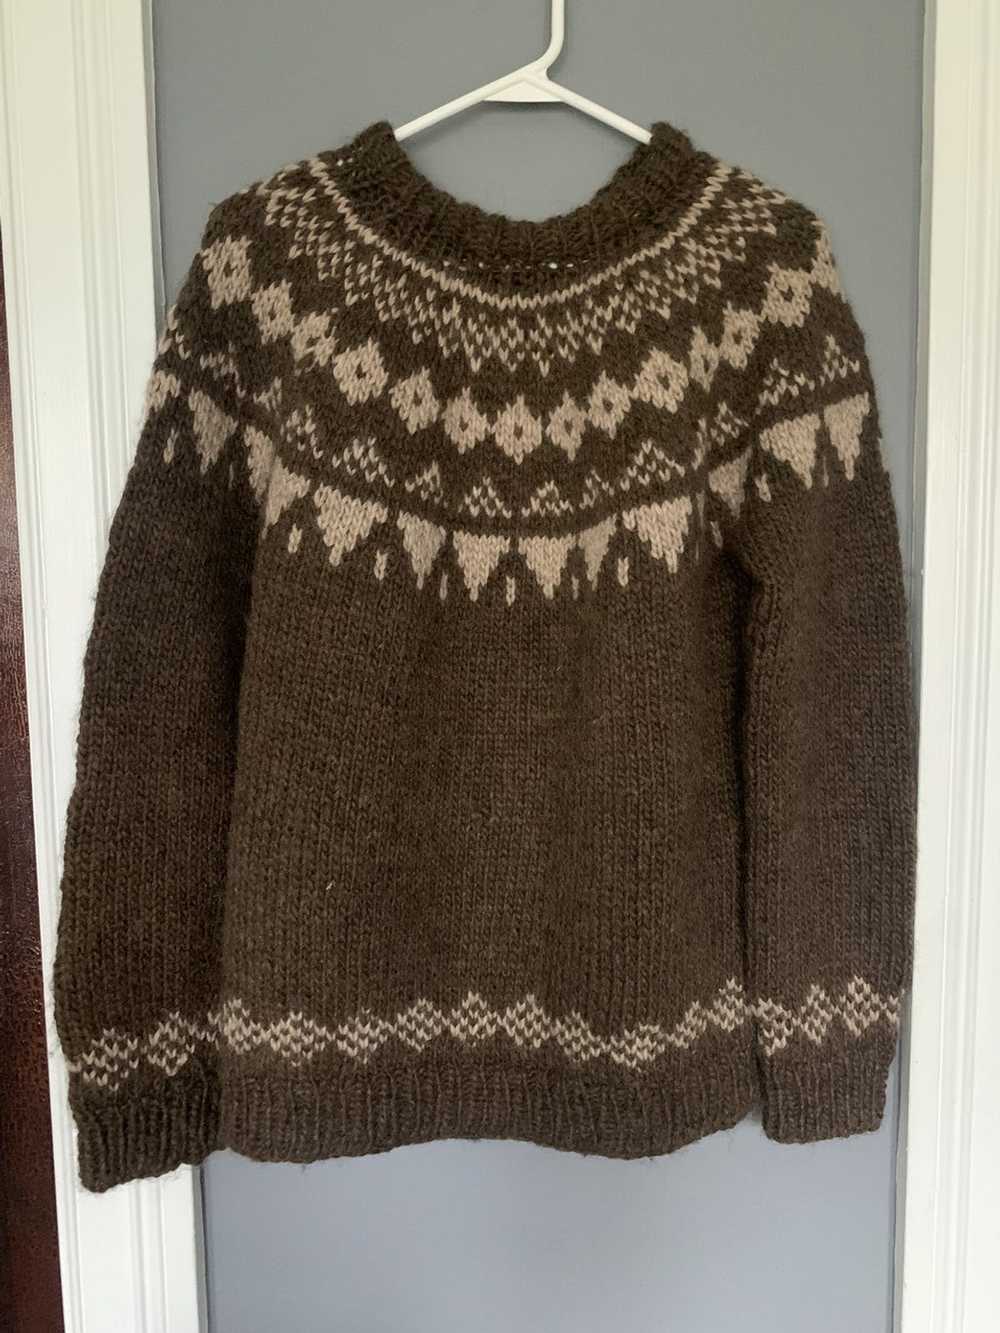 Handmade × Vintage Handmade Vinatge Wool Sweater - image 2